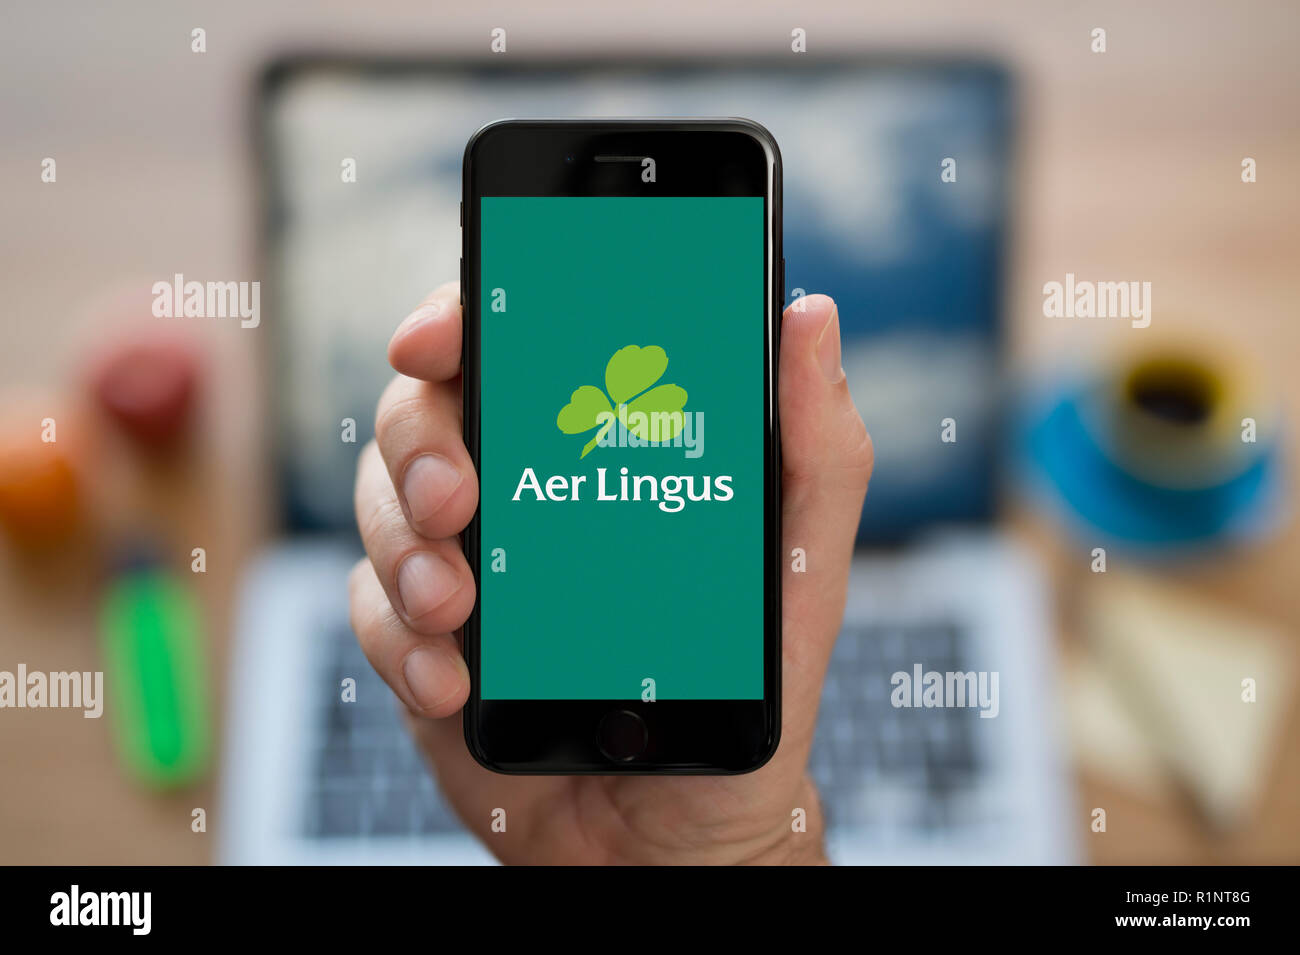 Un homme se penche sur son iPhone qui affiche le logo d'Aer Lingus, tandis qu'assis à son bureau de l'ordinateur (usage éditorial uniquement). Banque D'Images